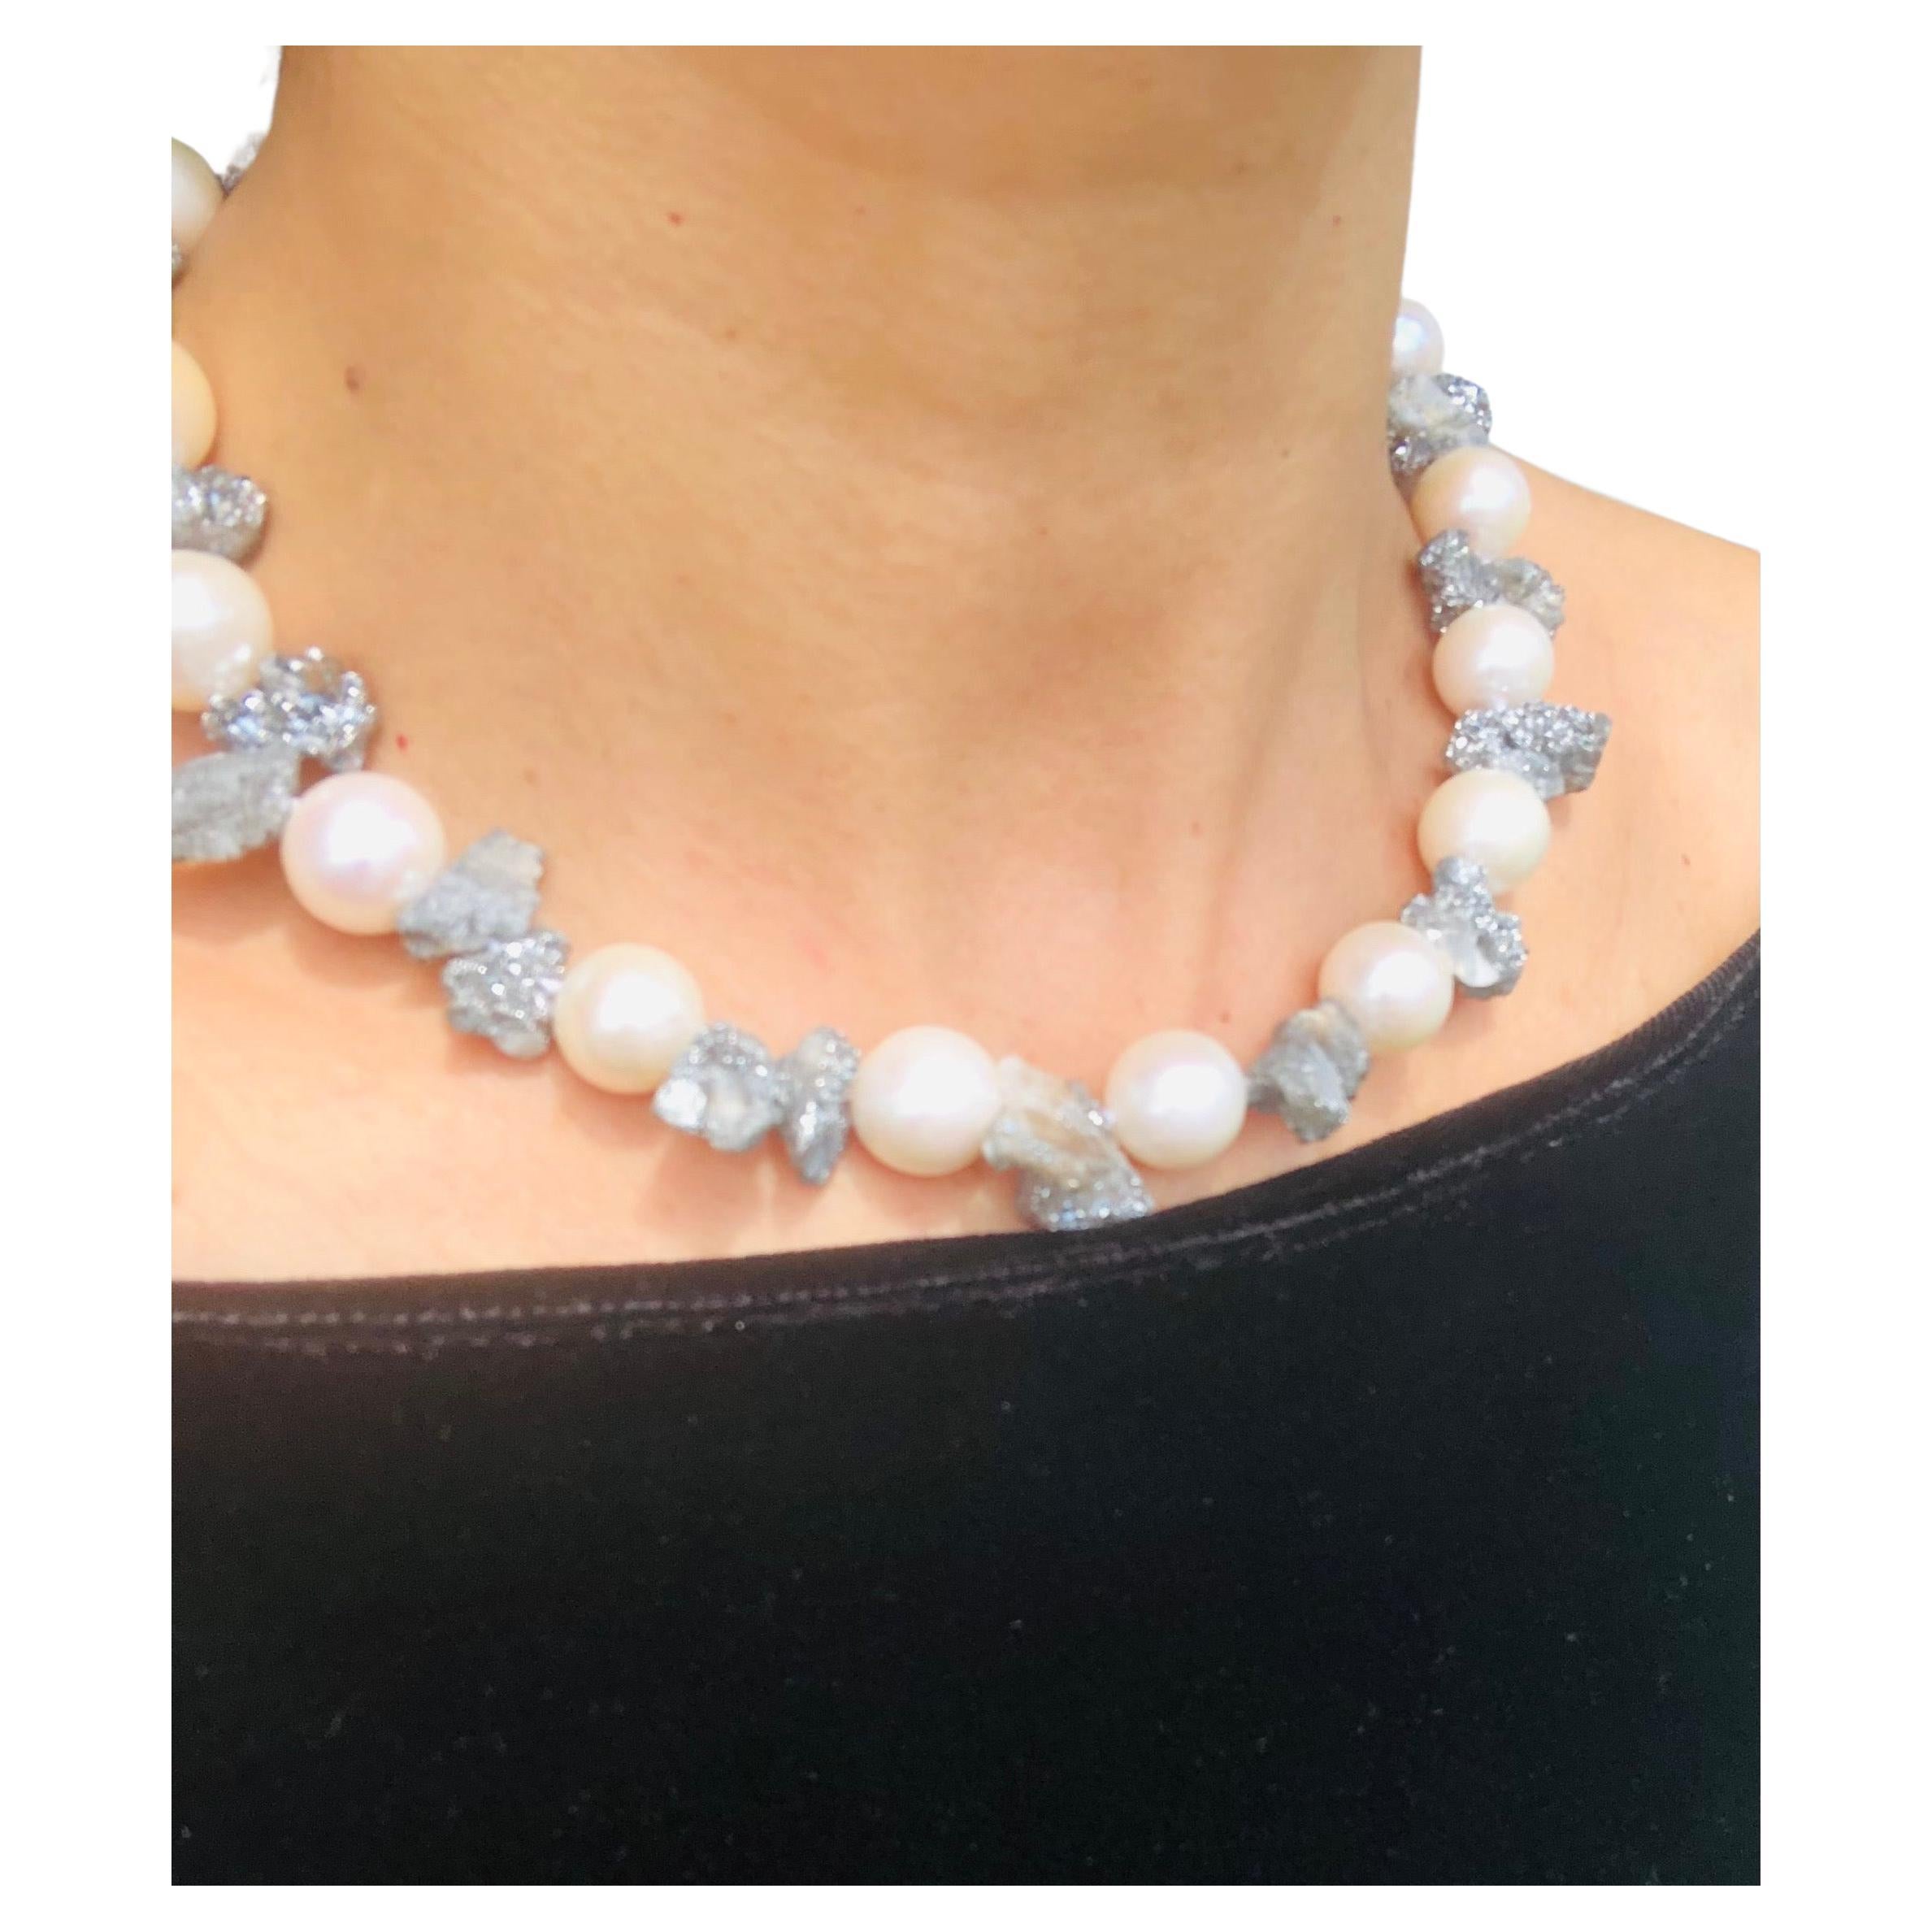 A.Jeschel  Lustrous 14mm pearls and sparkly druzy Quartz necklace.